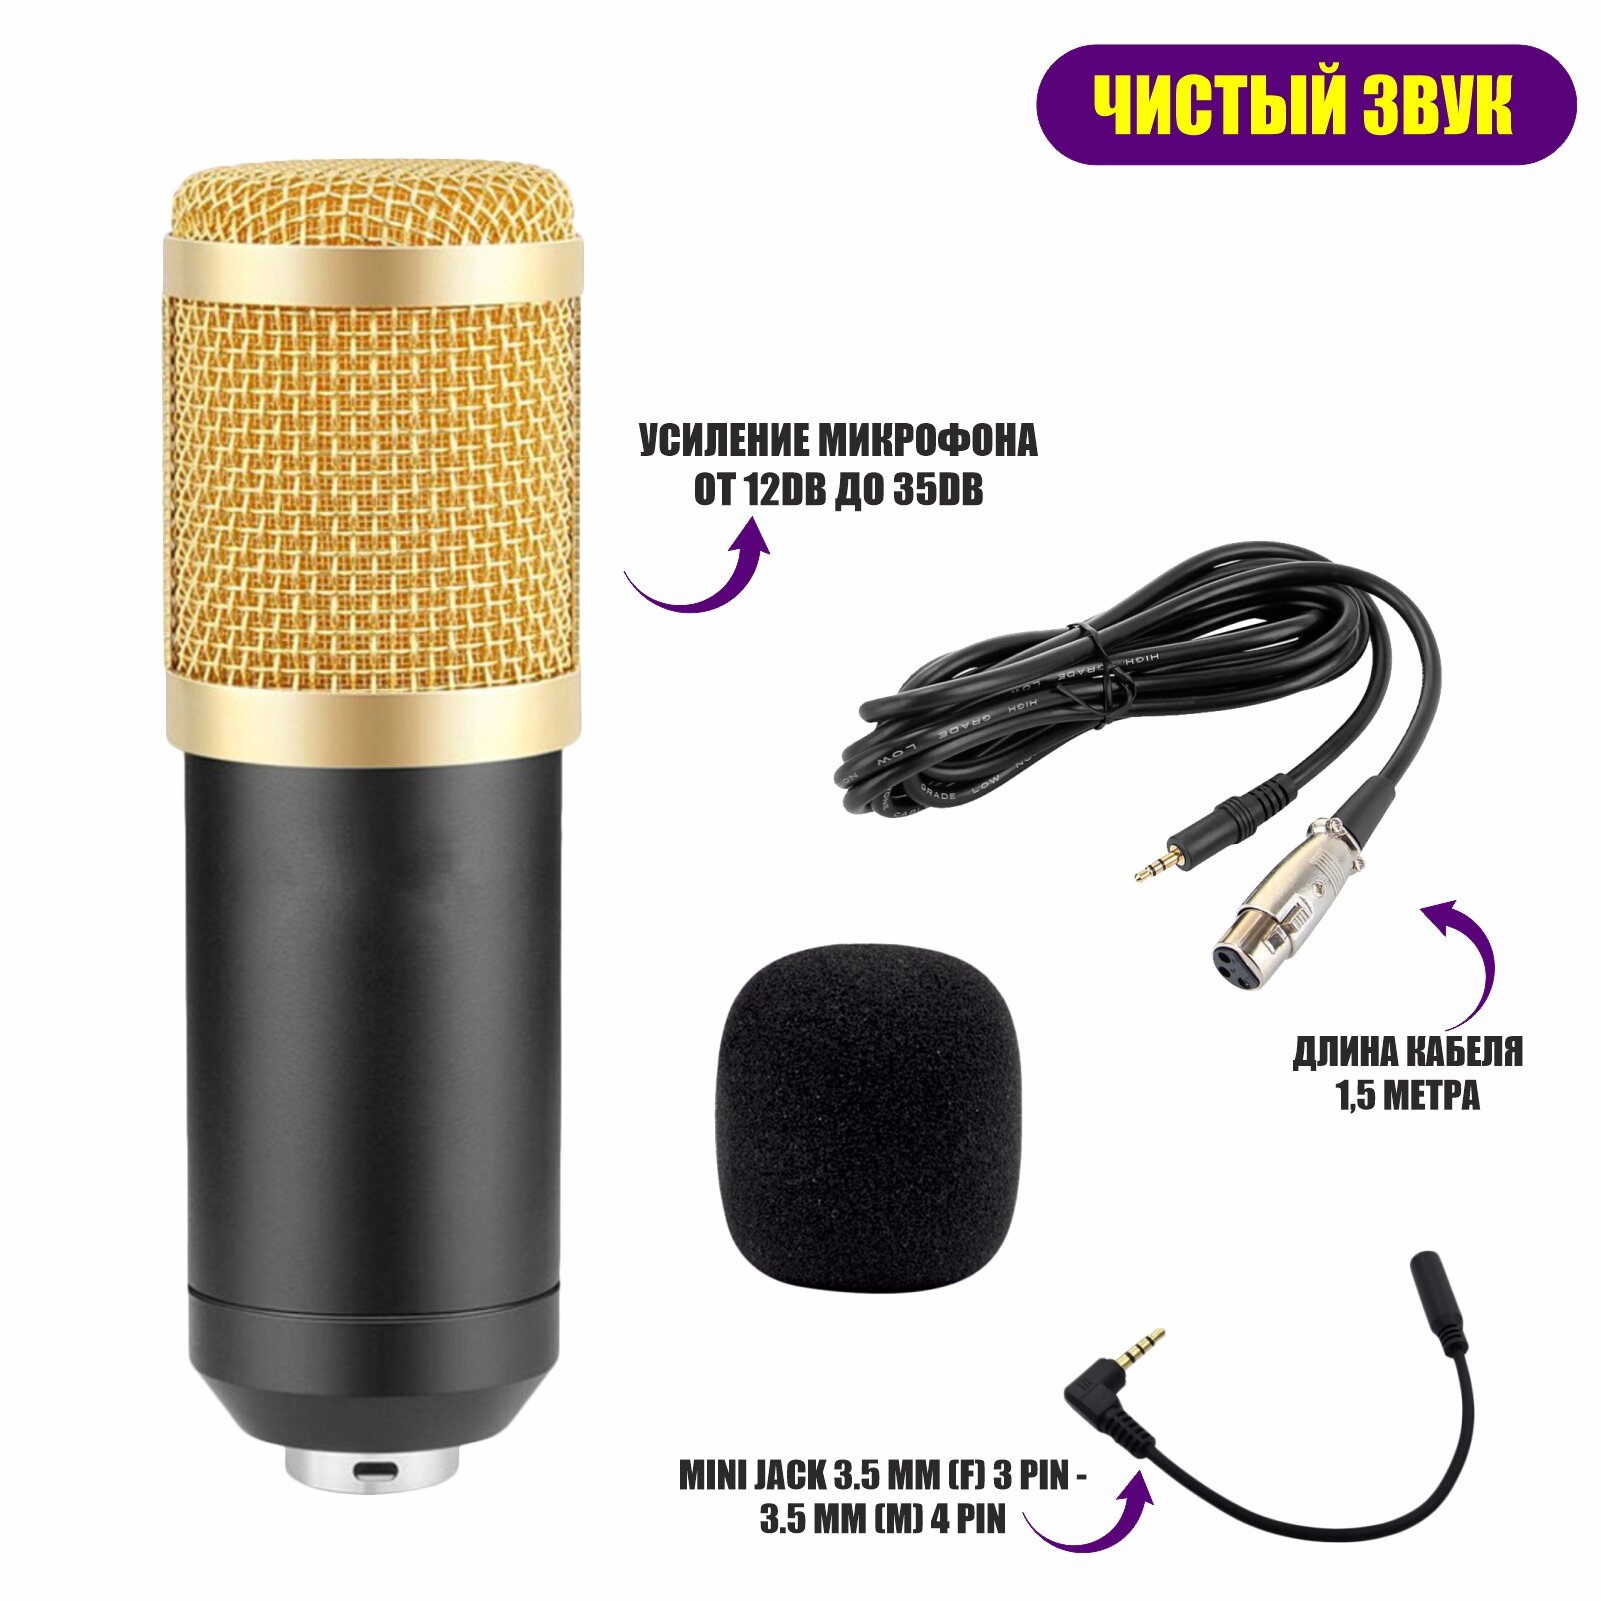 Микрофон BM-800 конденсаторный c ветрозащитой, кабелем XLR - Jack 3.5 и переходником для подключения к телефону, черно-золотой.